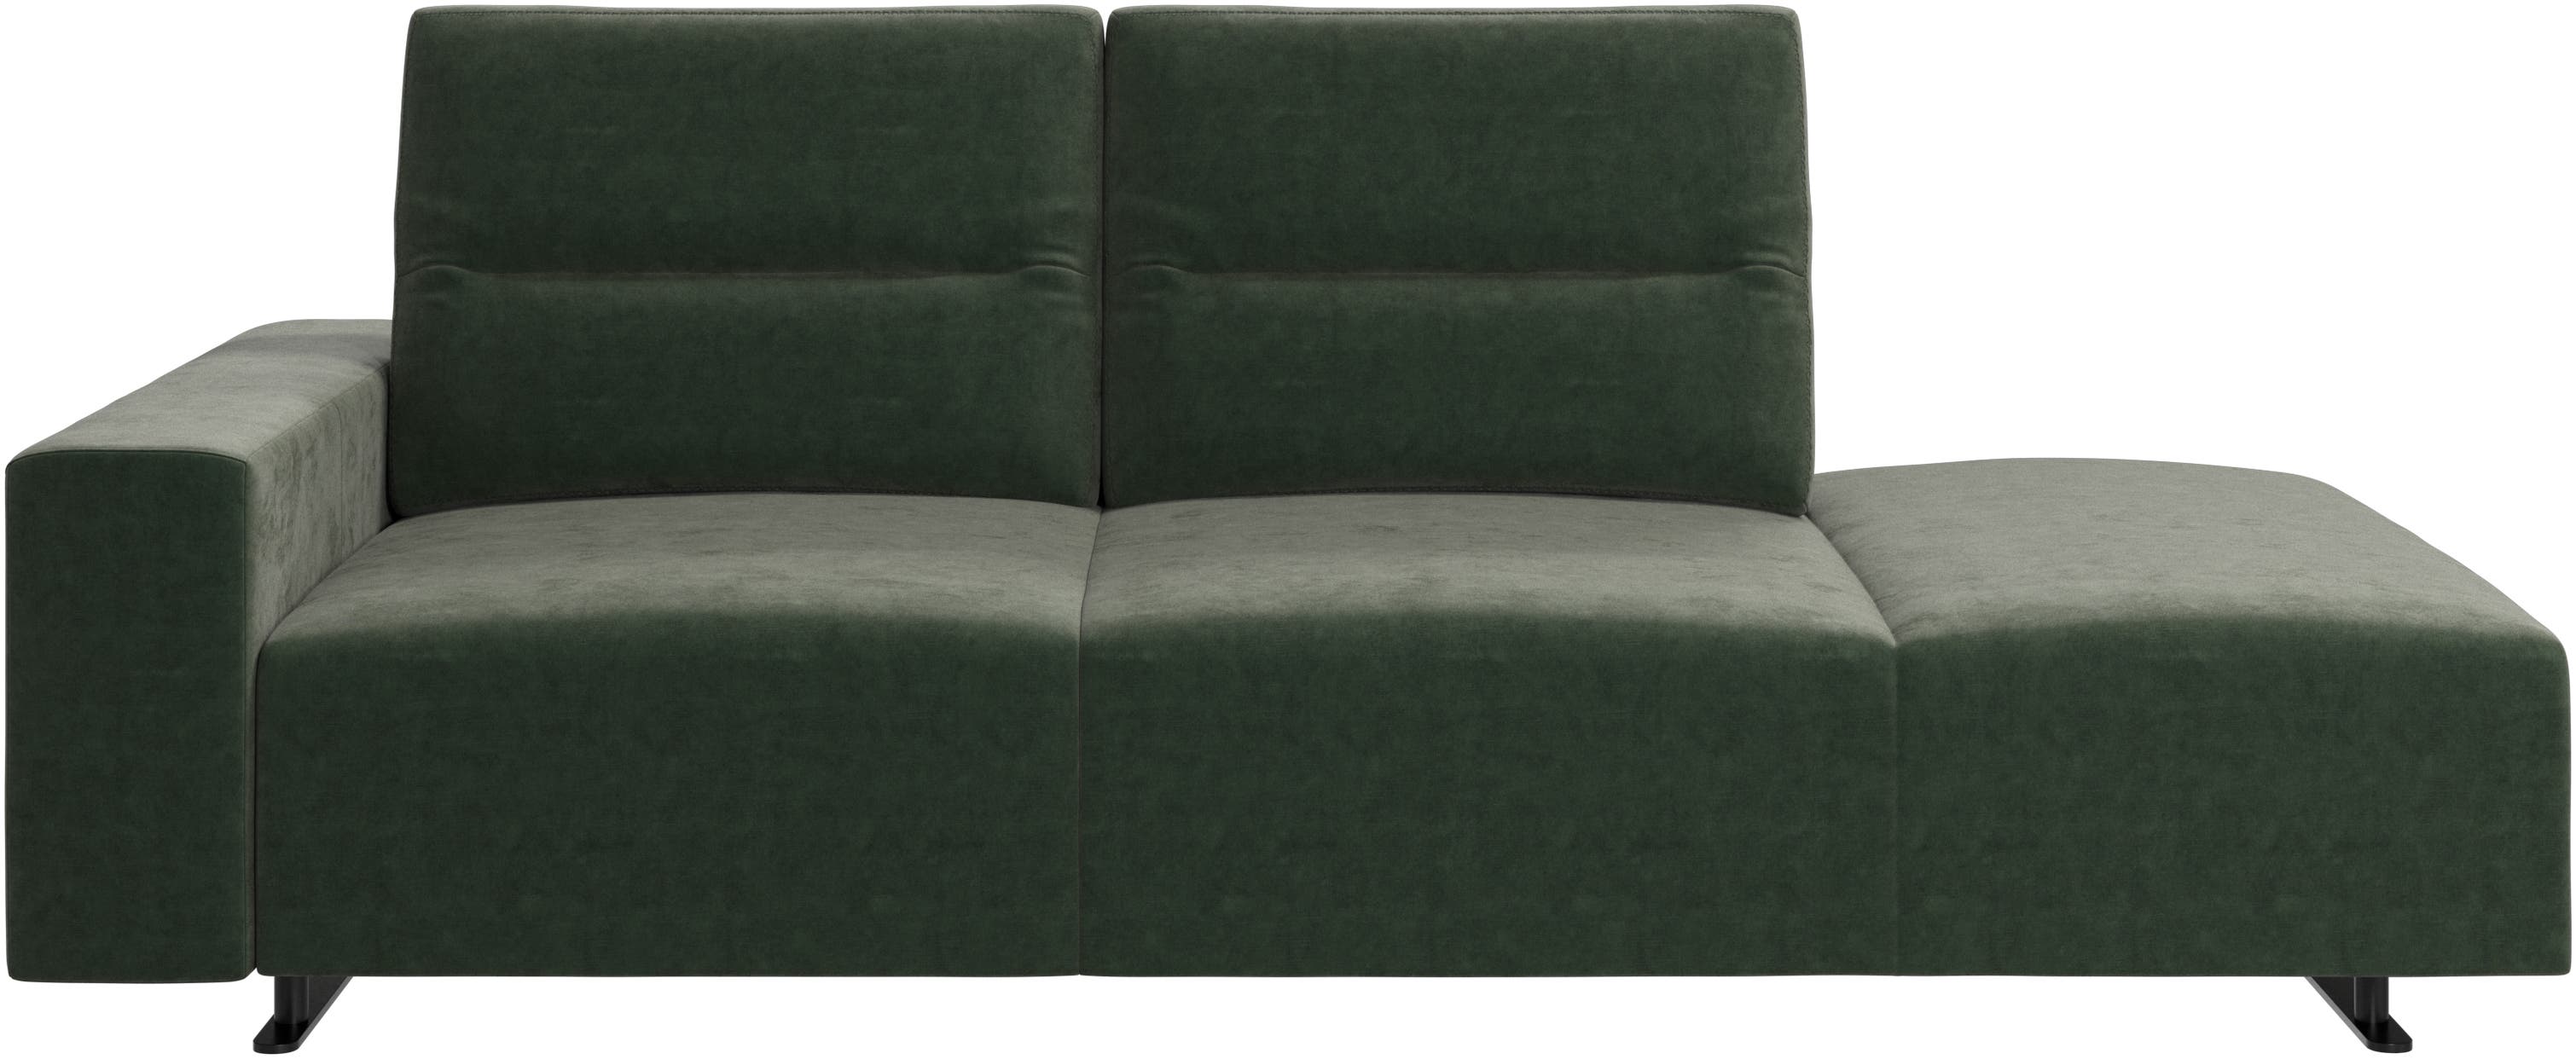 Canapé Hampton avec dossier ajustable et chaise longue, rangement et accoudoir côté gauche